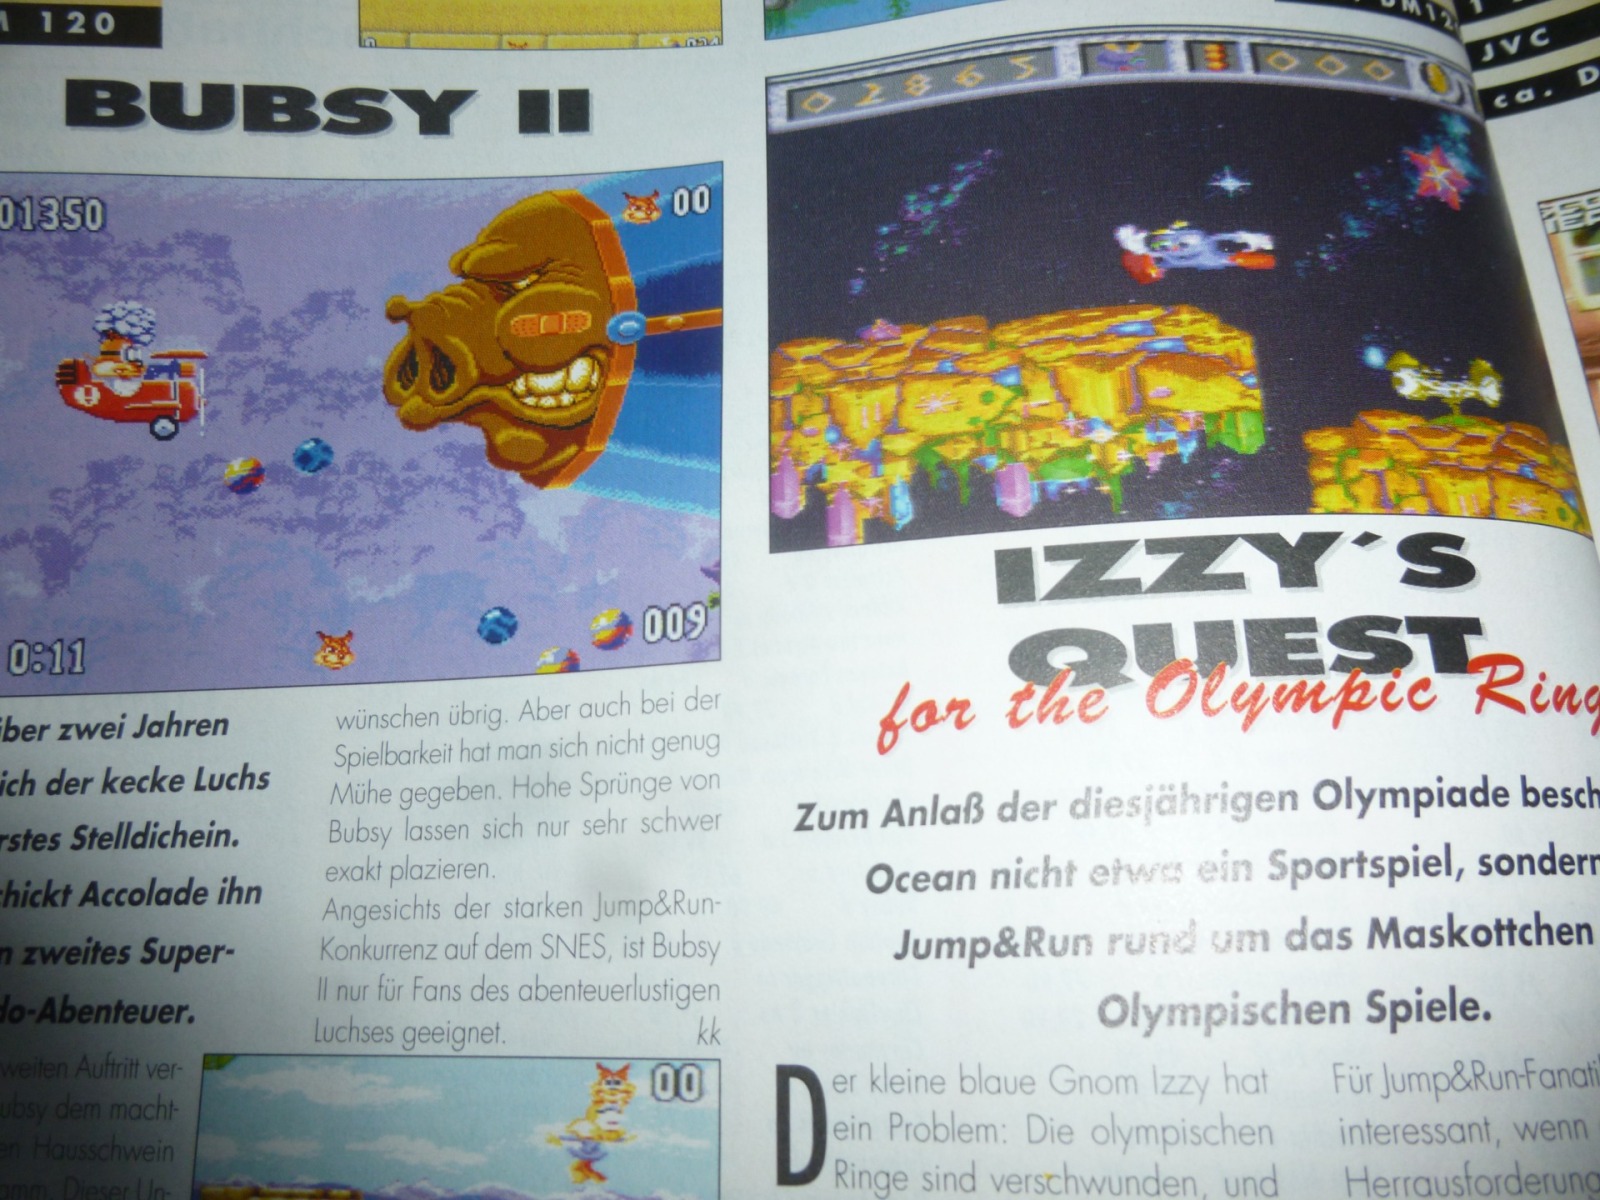 TOTAL Das unabhängige Magazin - 100% Nintendo - Ausgabe 3/96 1996 14